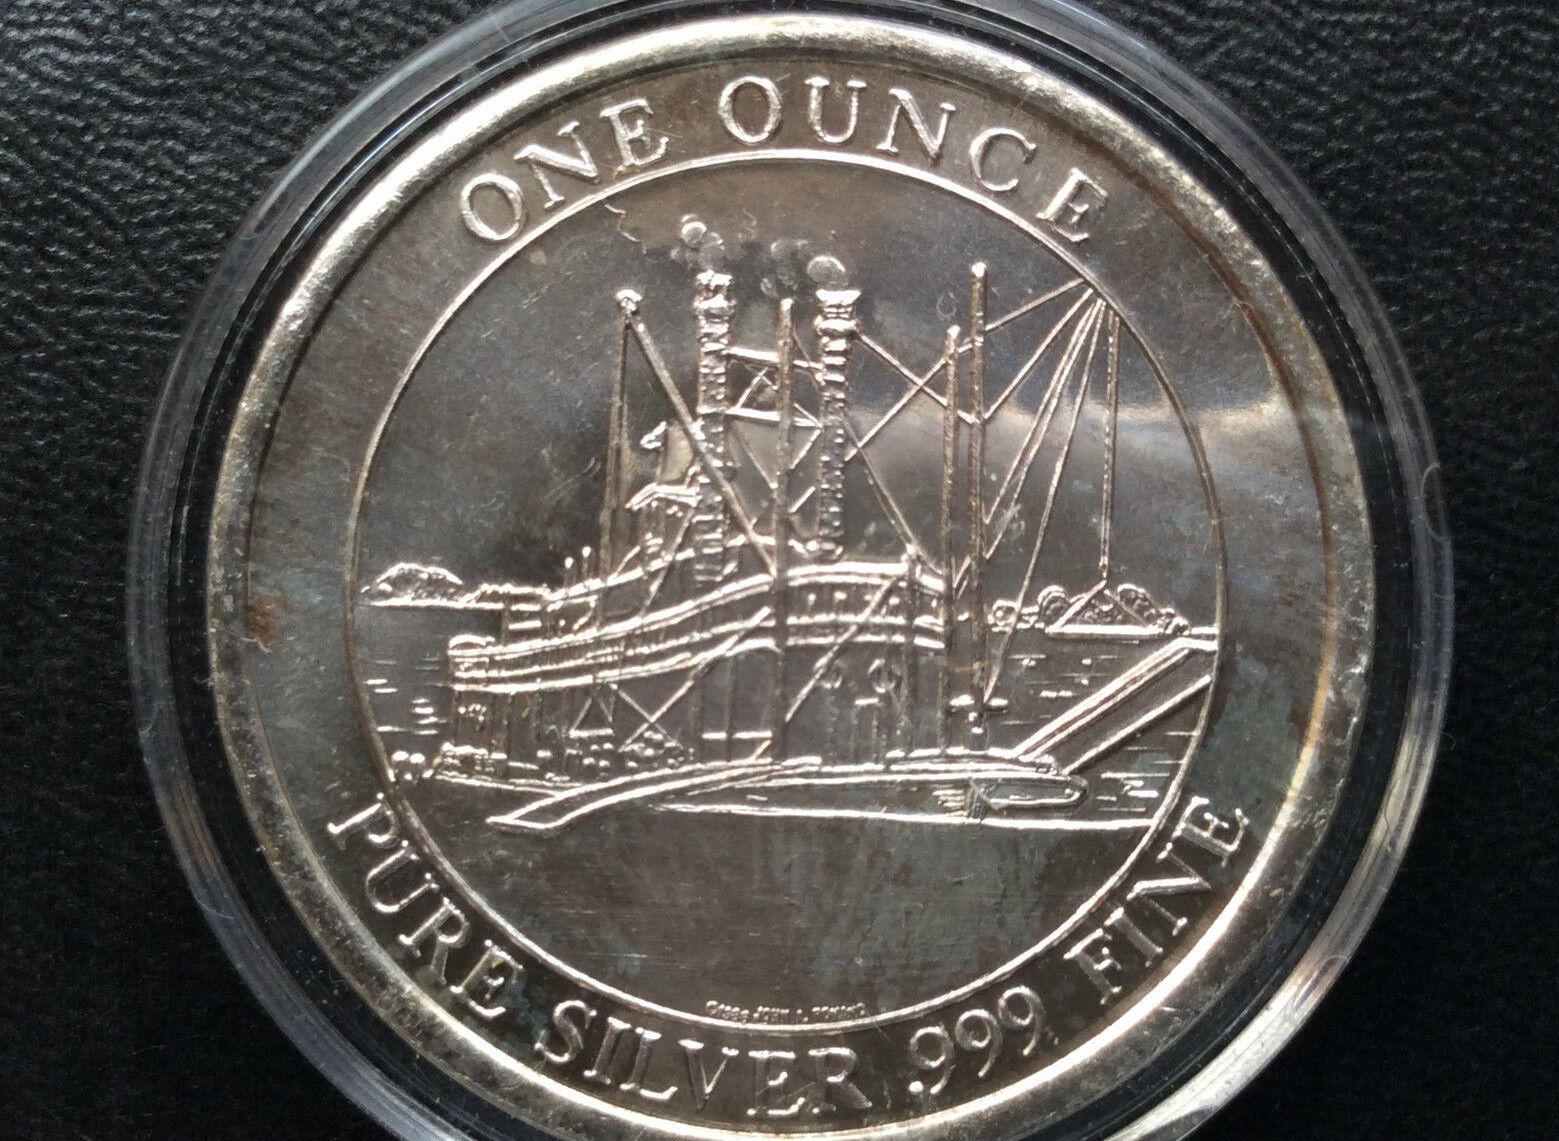 1987 Music Hall Cincinnati Bicentennial Commemorative Silver Medal A2024 Zaskakująca wyjątkowa wartość, prawdziwa gwarancja